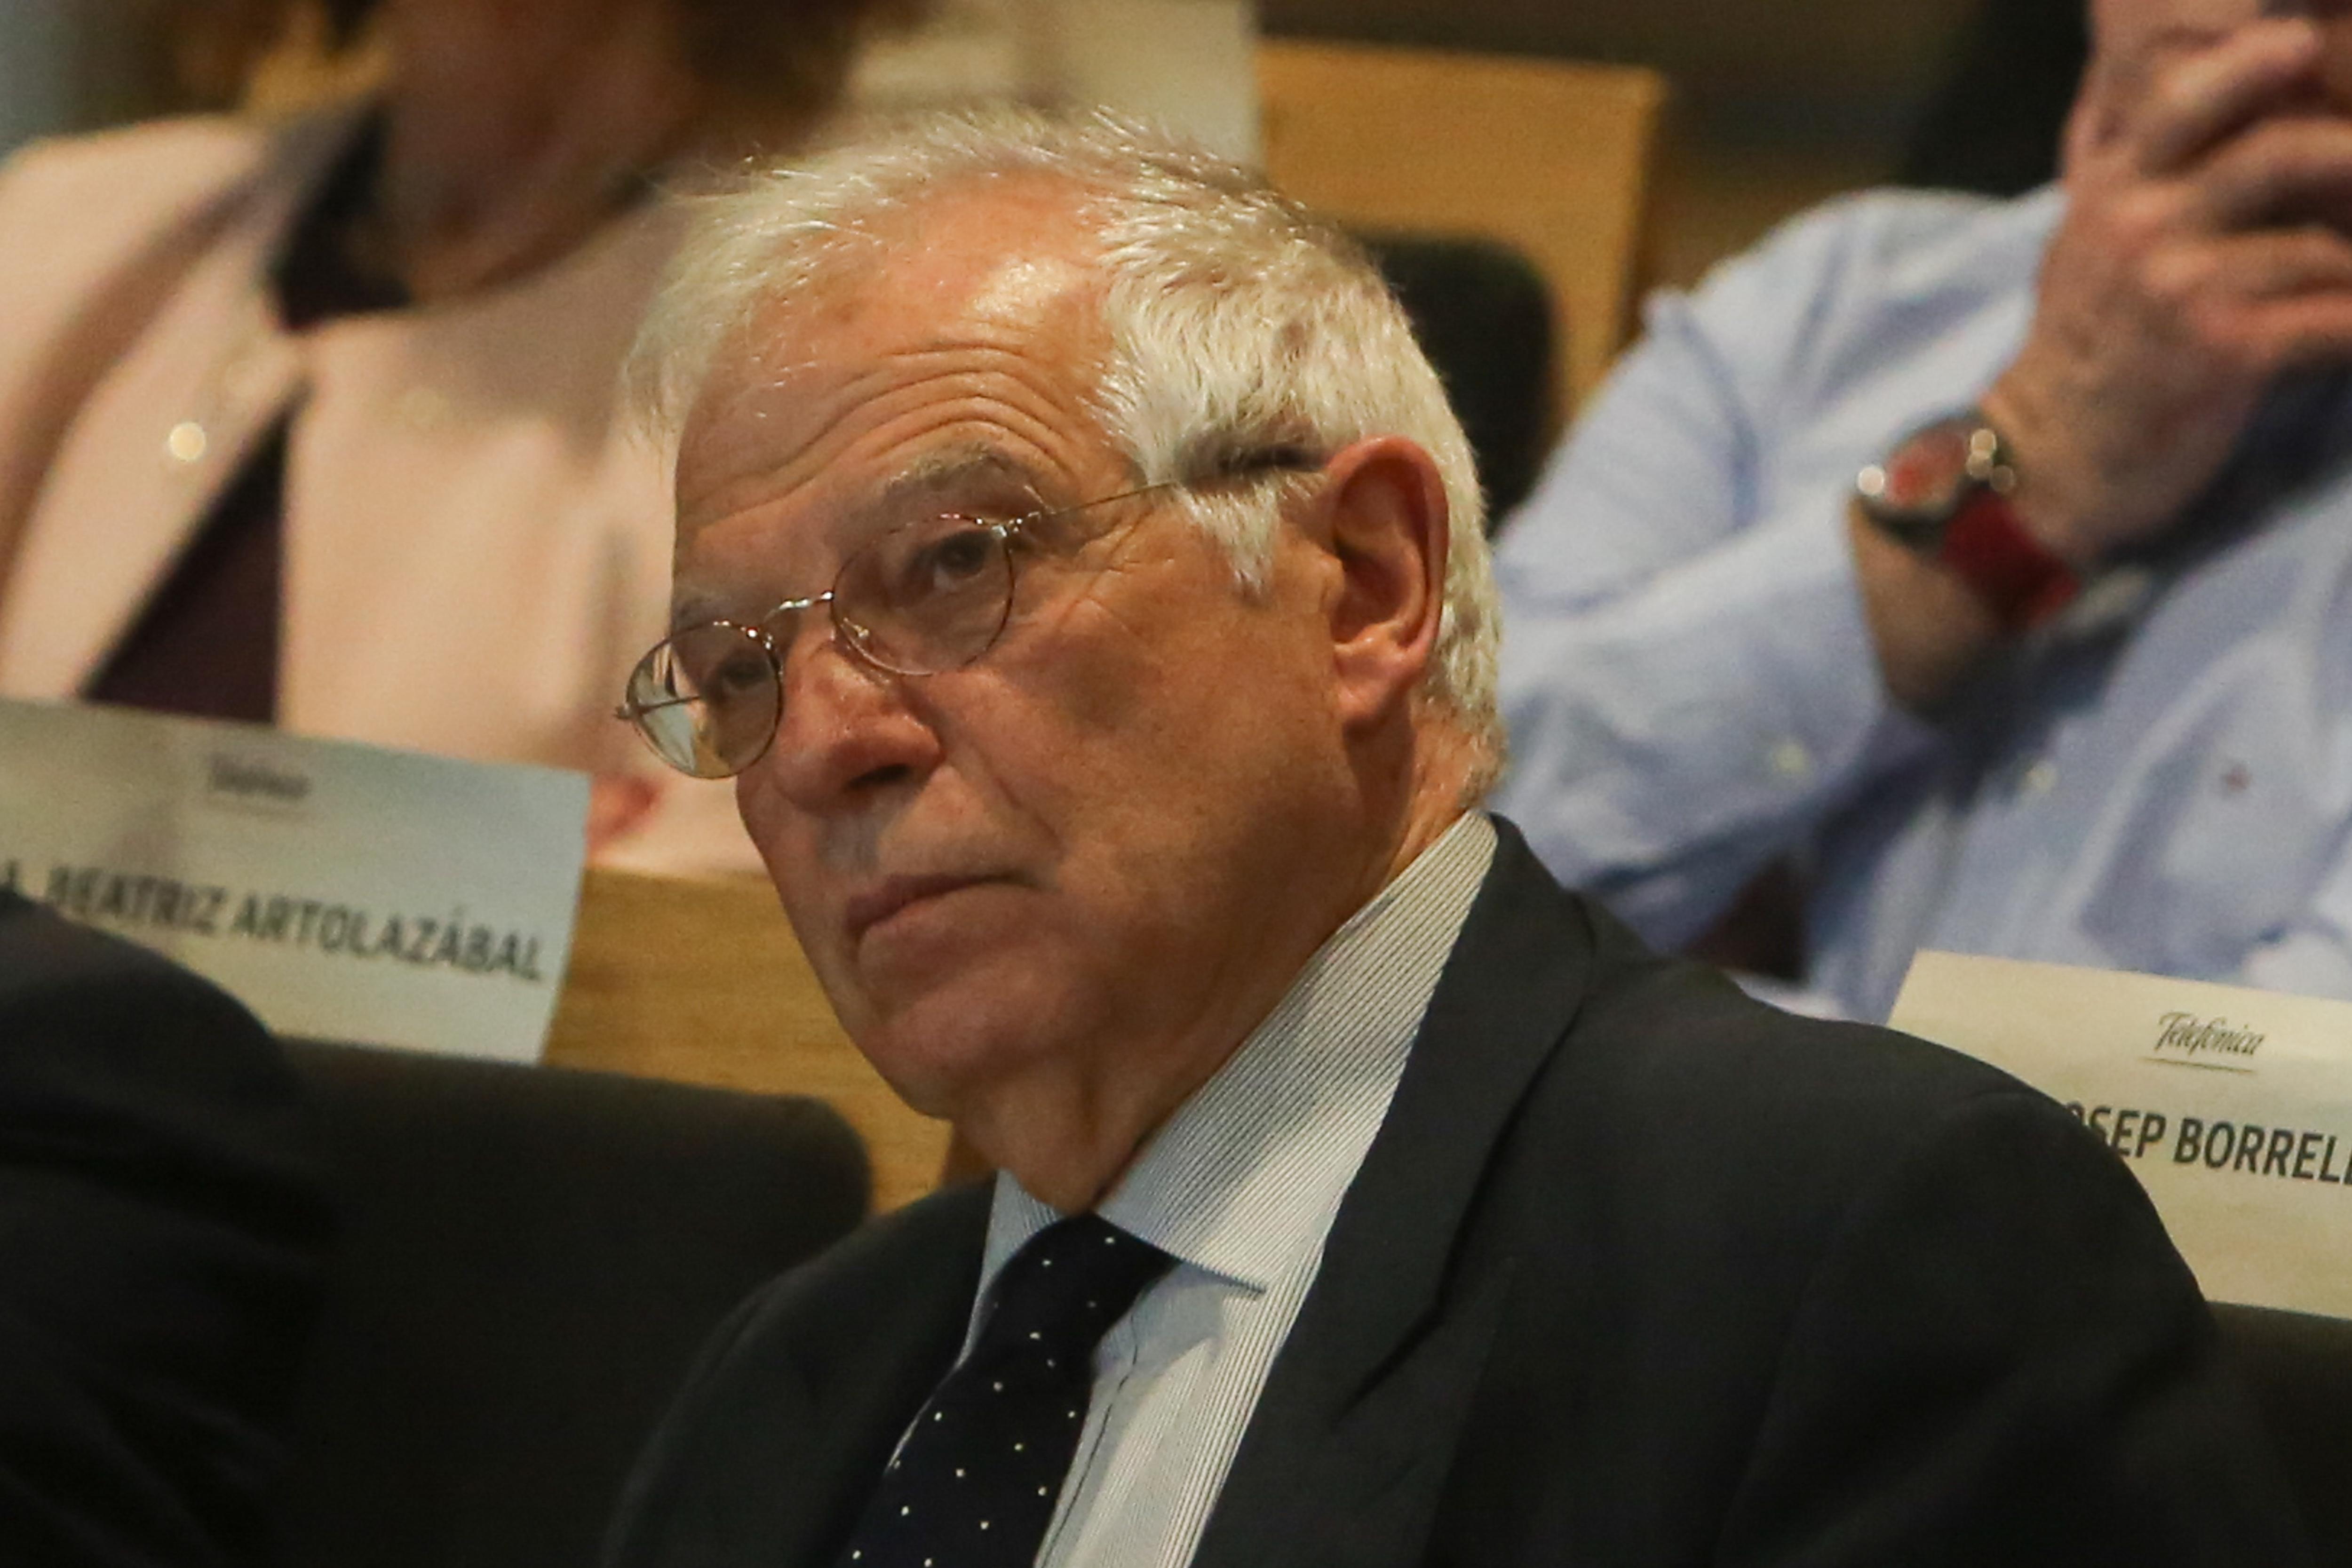  El ministro de Asuntos Exteriores Josep Borrell interviene en la clausura de la conferencia Migración y ciudades el camino hacia una integración inclusiva 